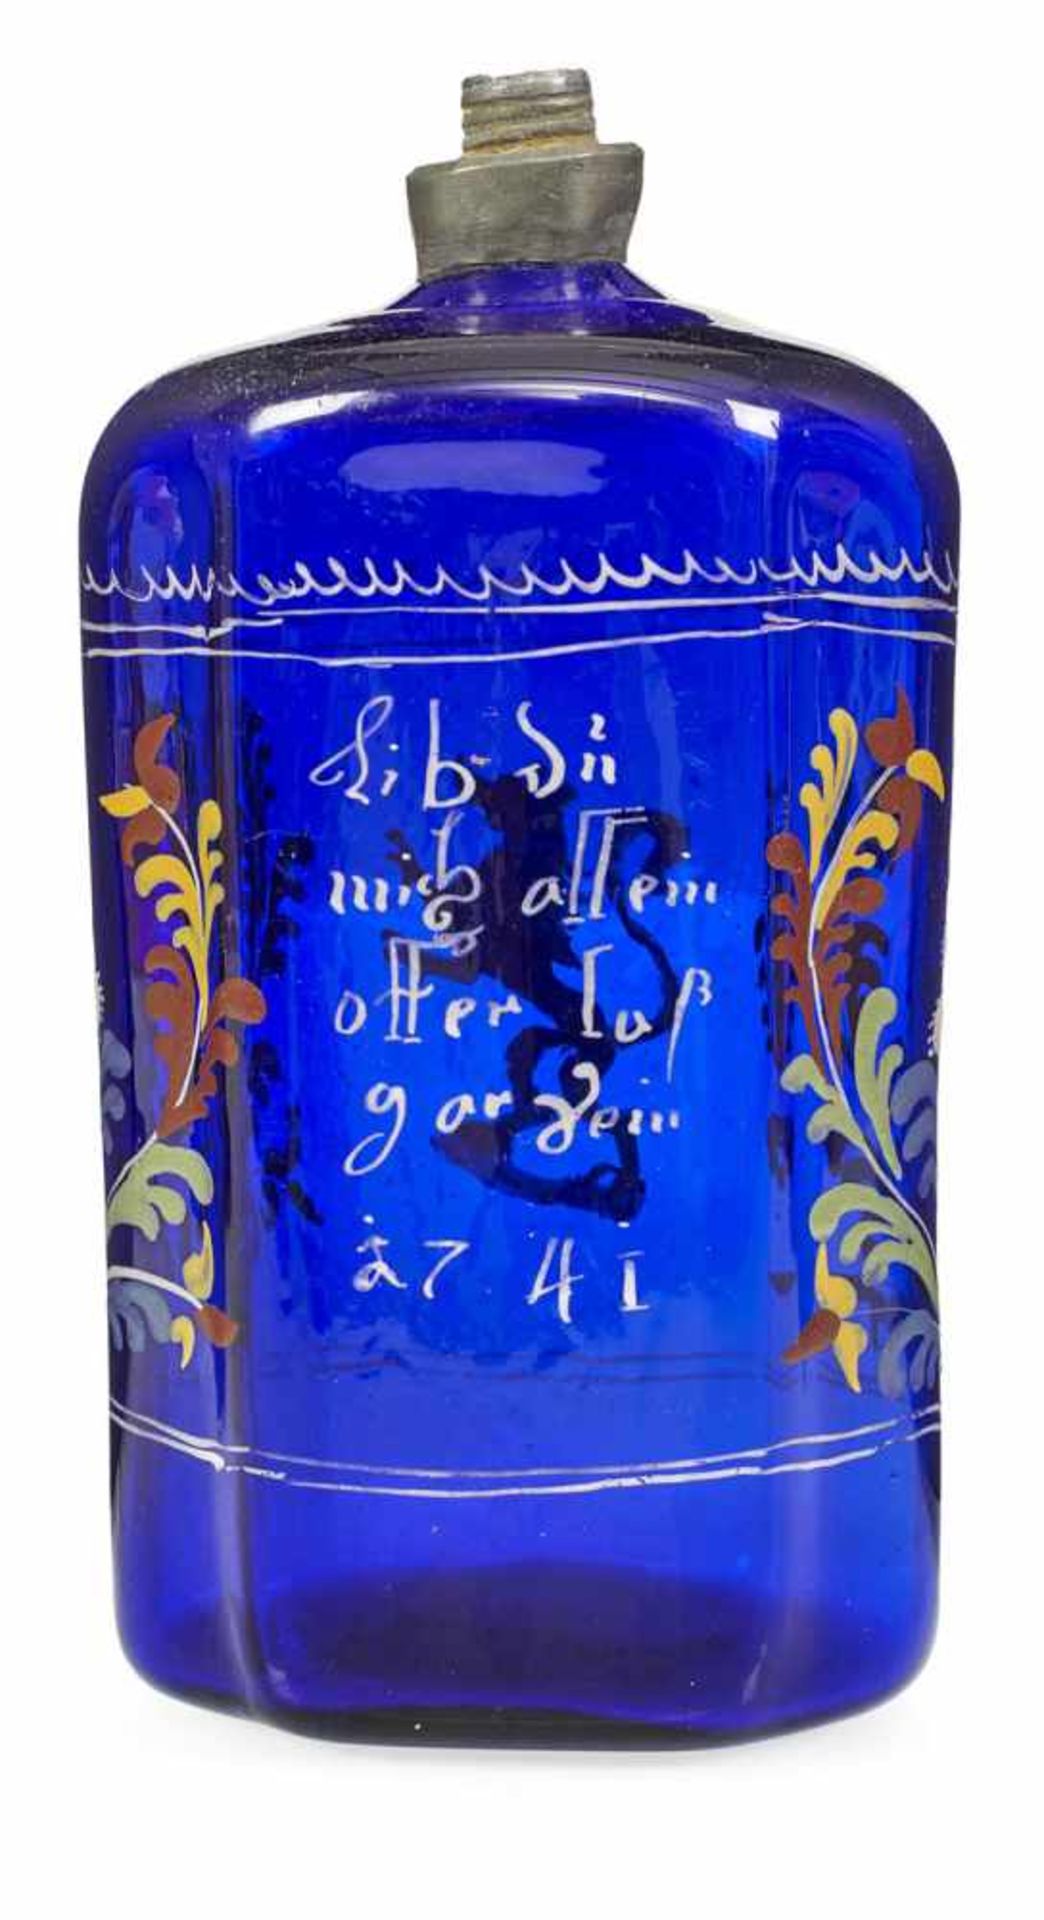 Schnapsflasche mit steigendem LöwenDeutsch oder Böhmen, datiert 1741H. 16,5 cmKobaltblaues Glas, - Bild 2 aus 2